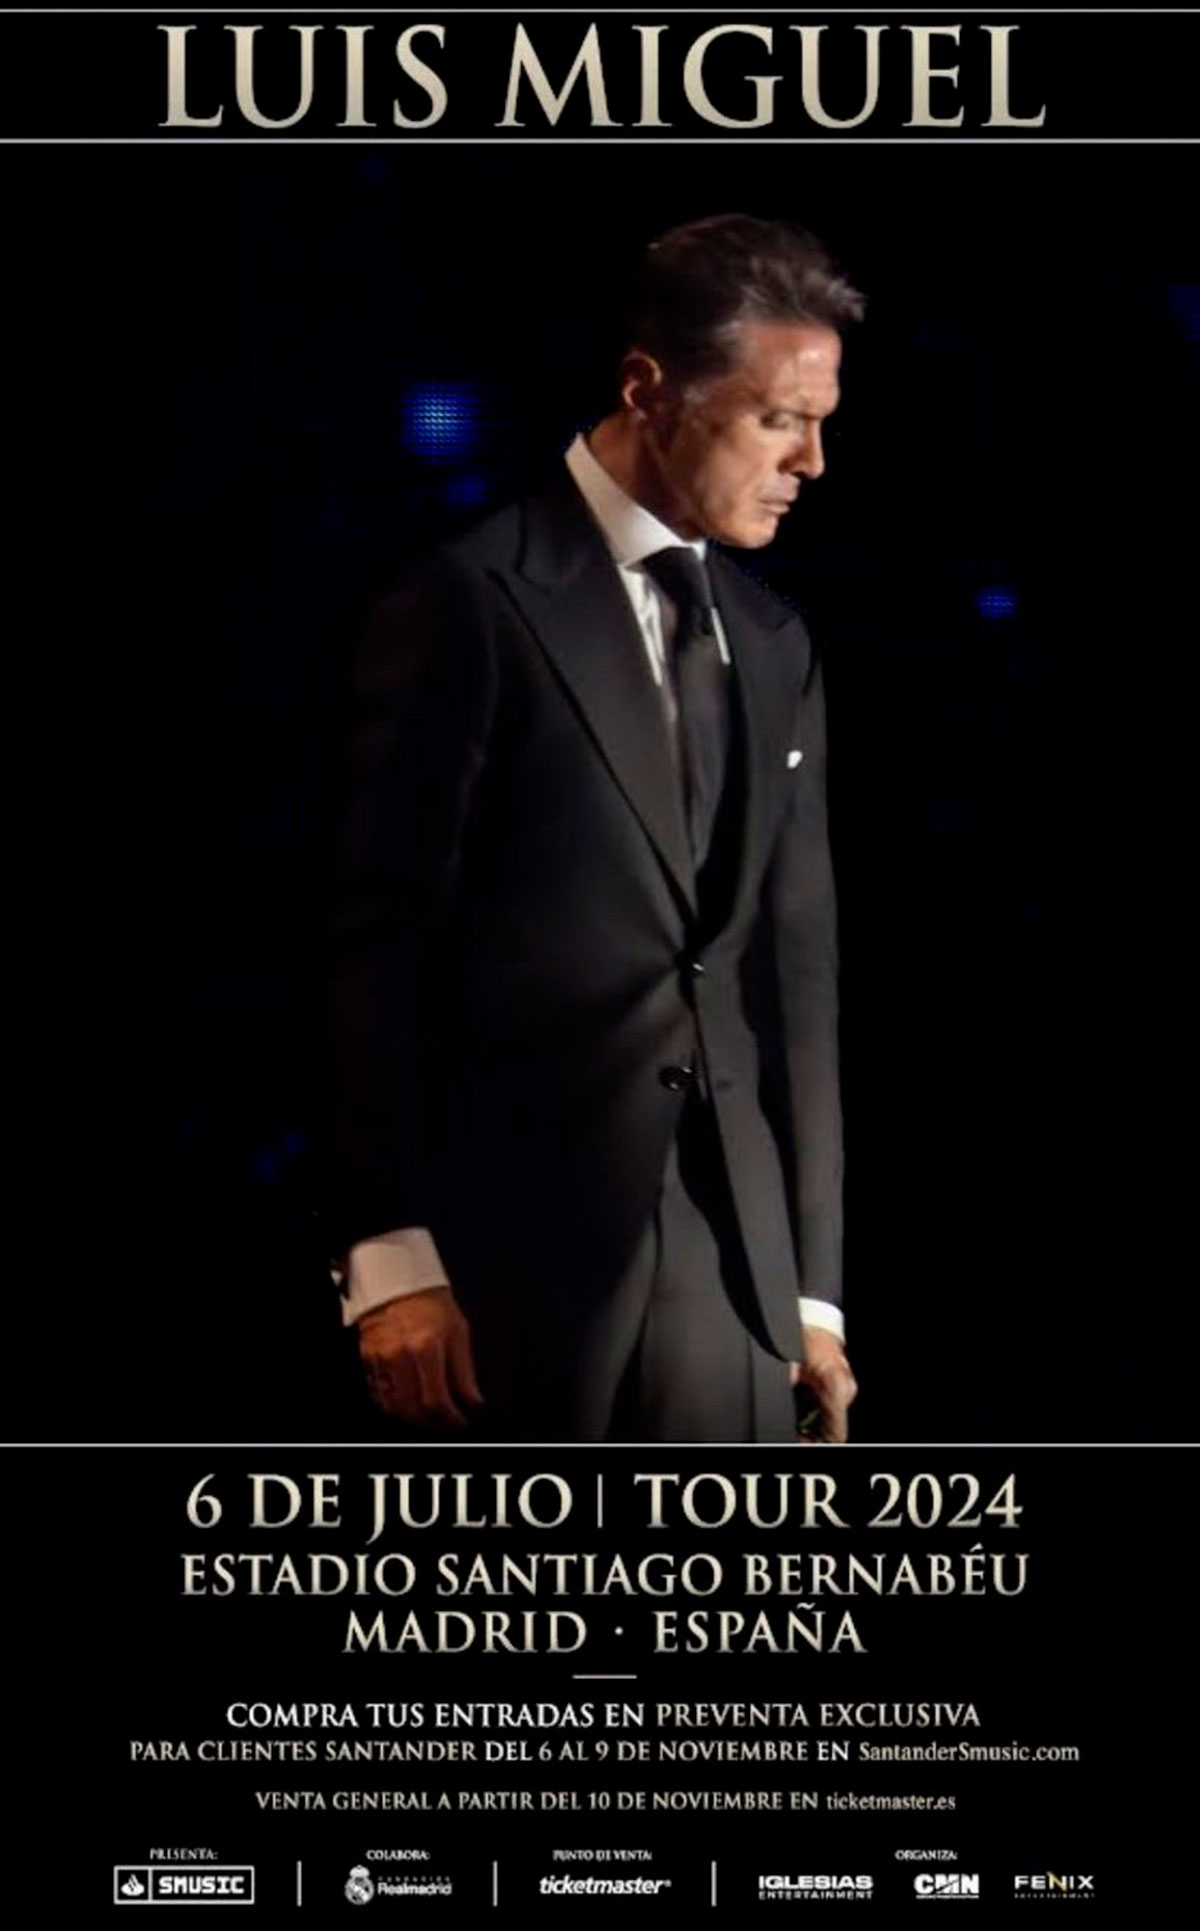 El cartel del concierto de Luis Miguel en Madrid